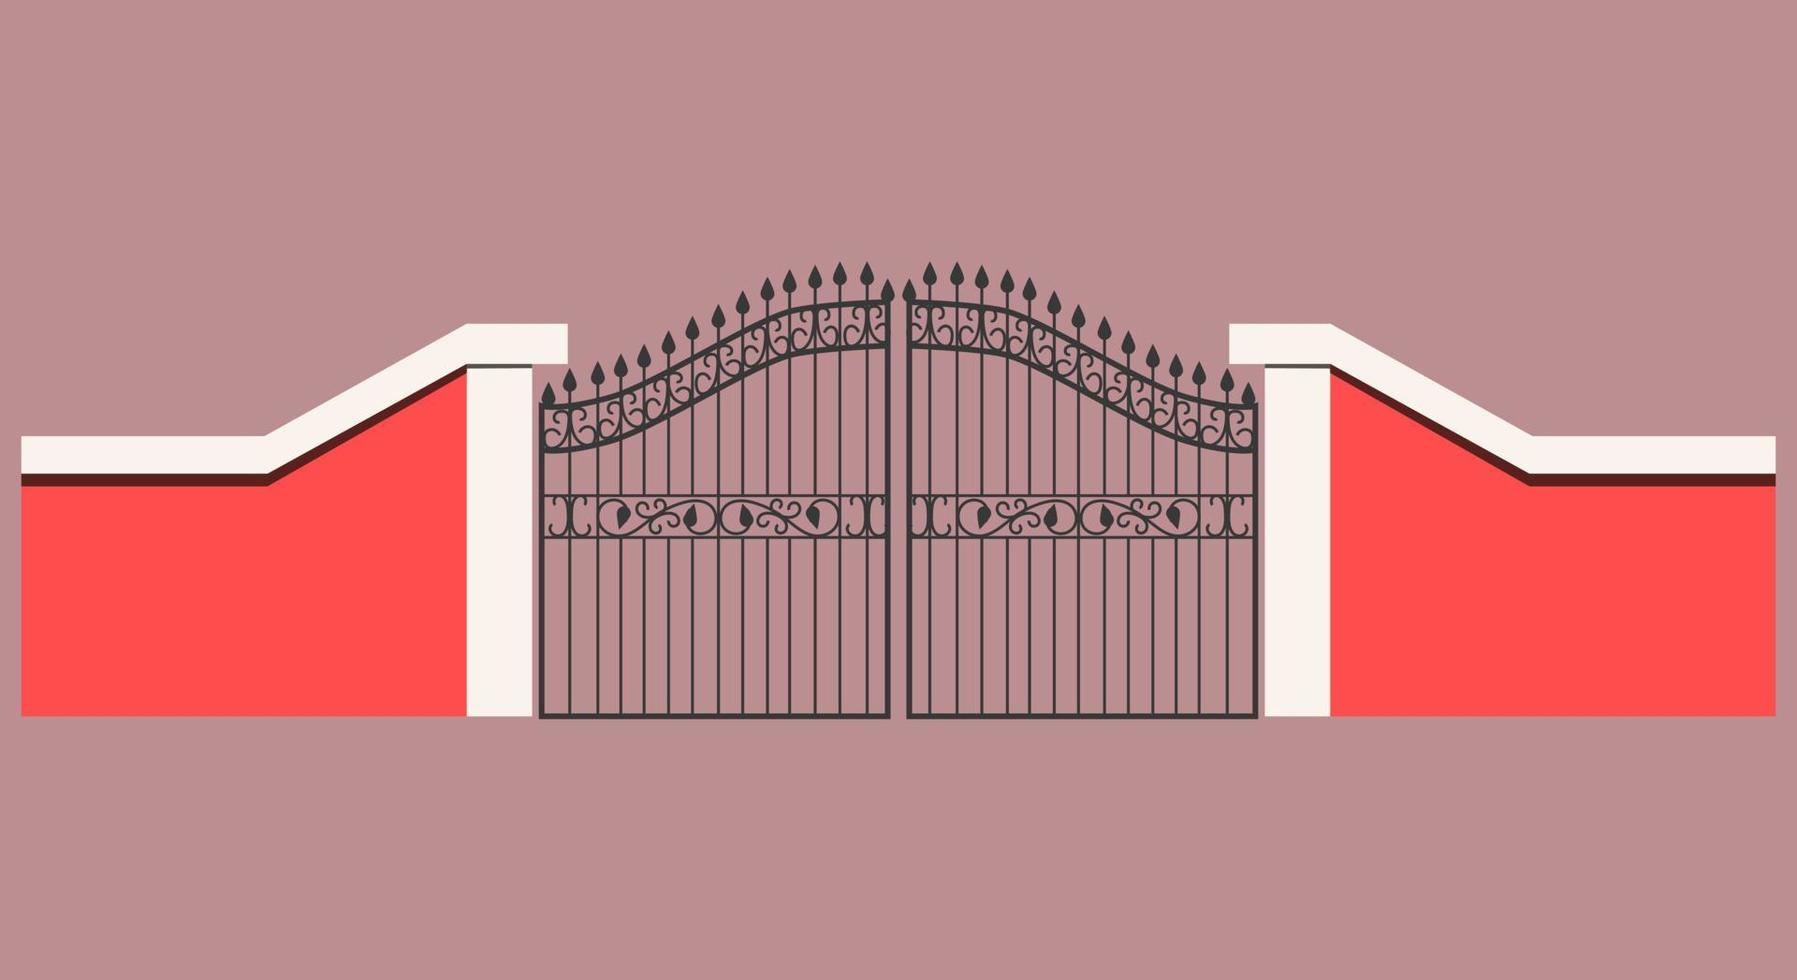 de nagemaakt Ingang poort is gemaakt van roze cement muur. gips ijzer smeden met afrondingen en stekels. vector illustratie. een groot metaal deur net zo een Ingang poort.